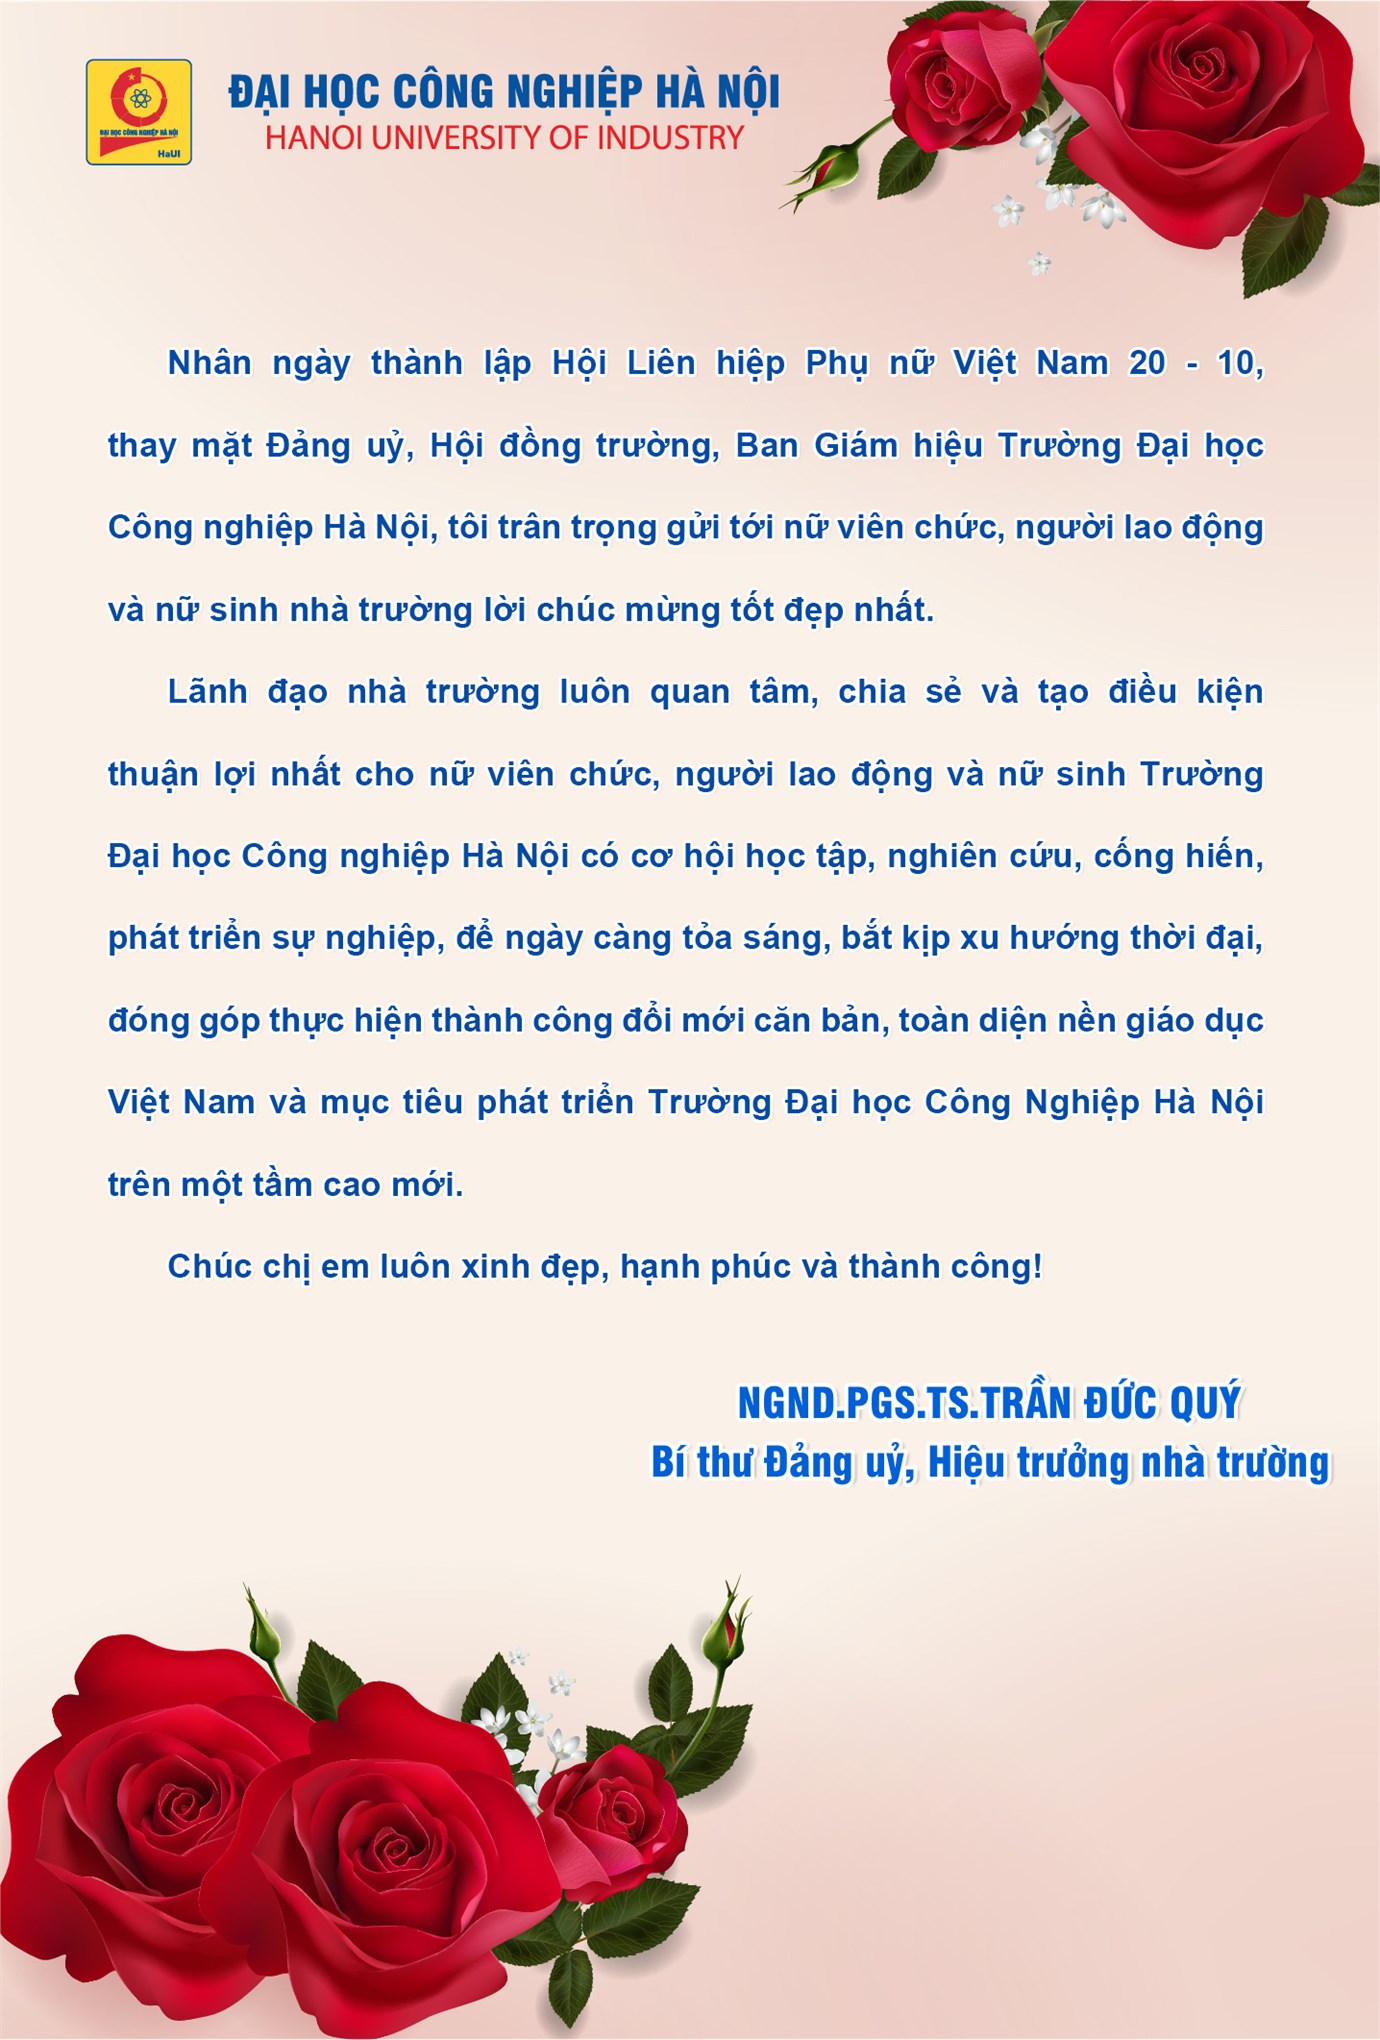 Hiệu trưởng chúc mừng nhân ngày thành lập Hội liên hiệp Phụ nữ Việt Nam 20/10